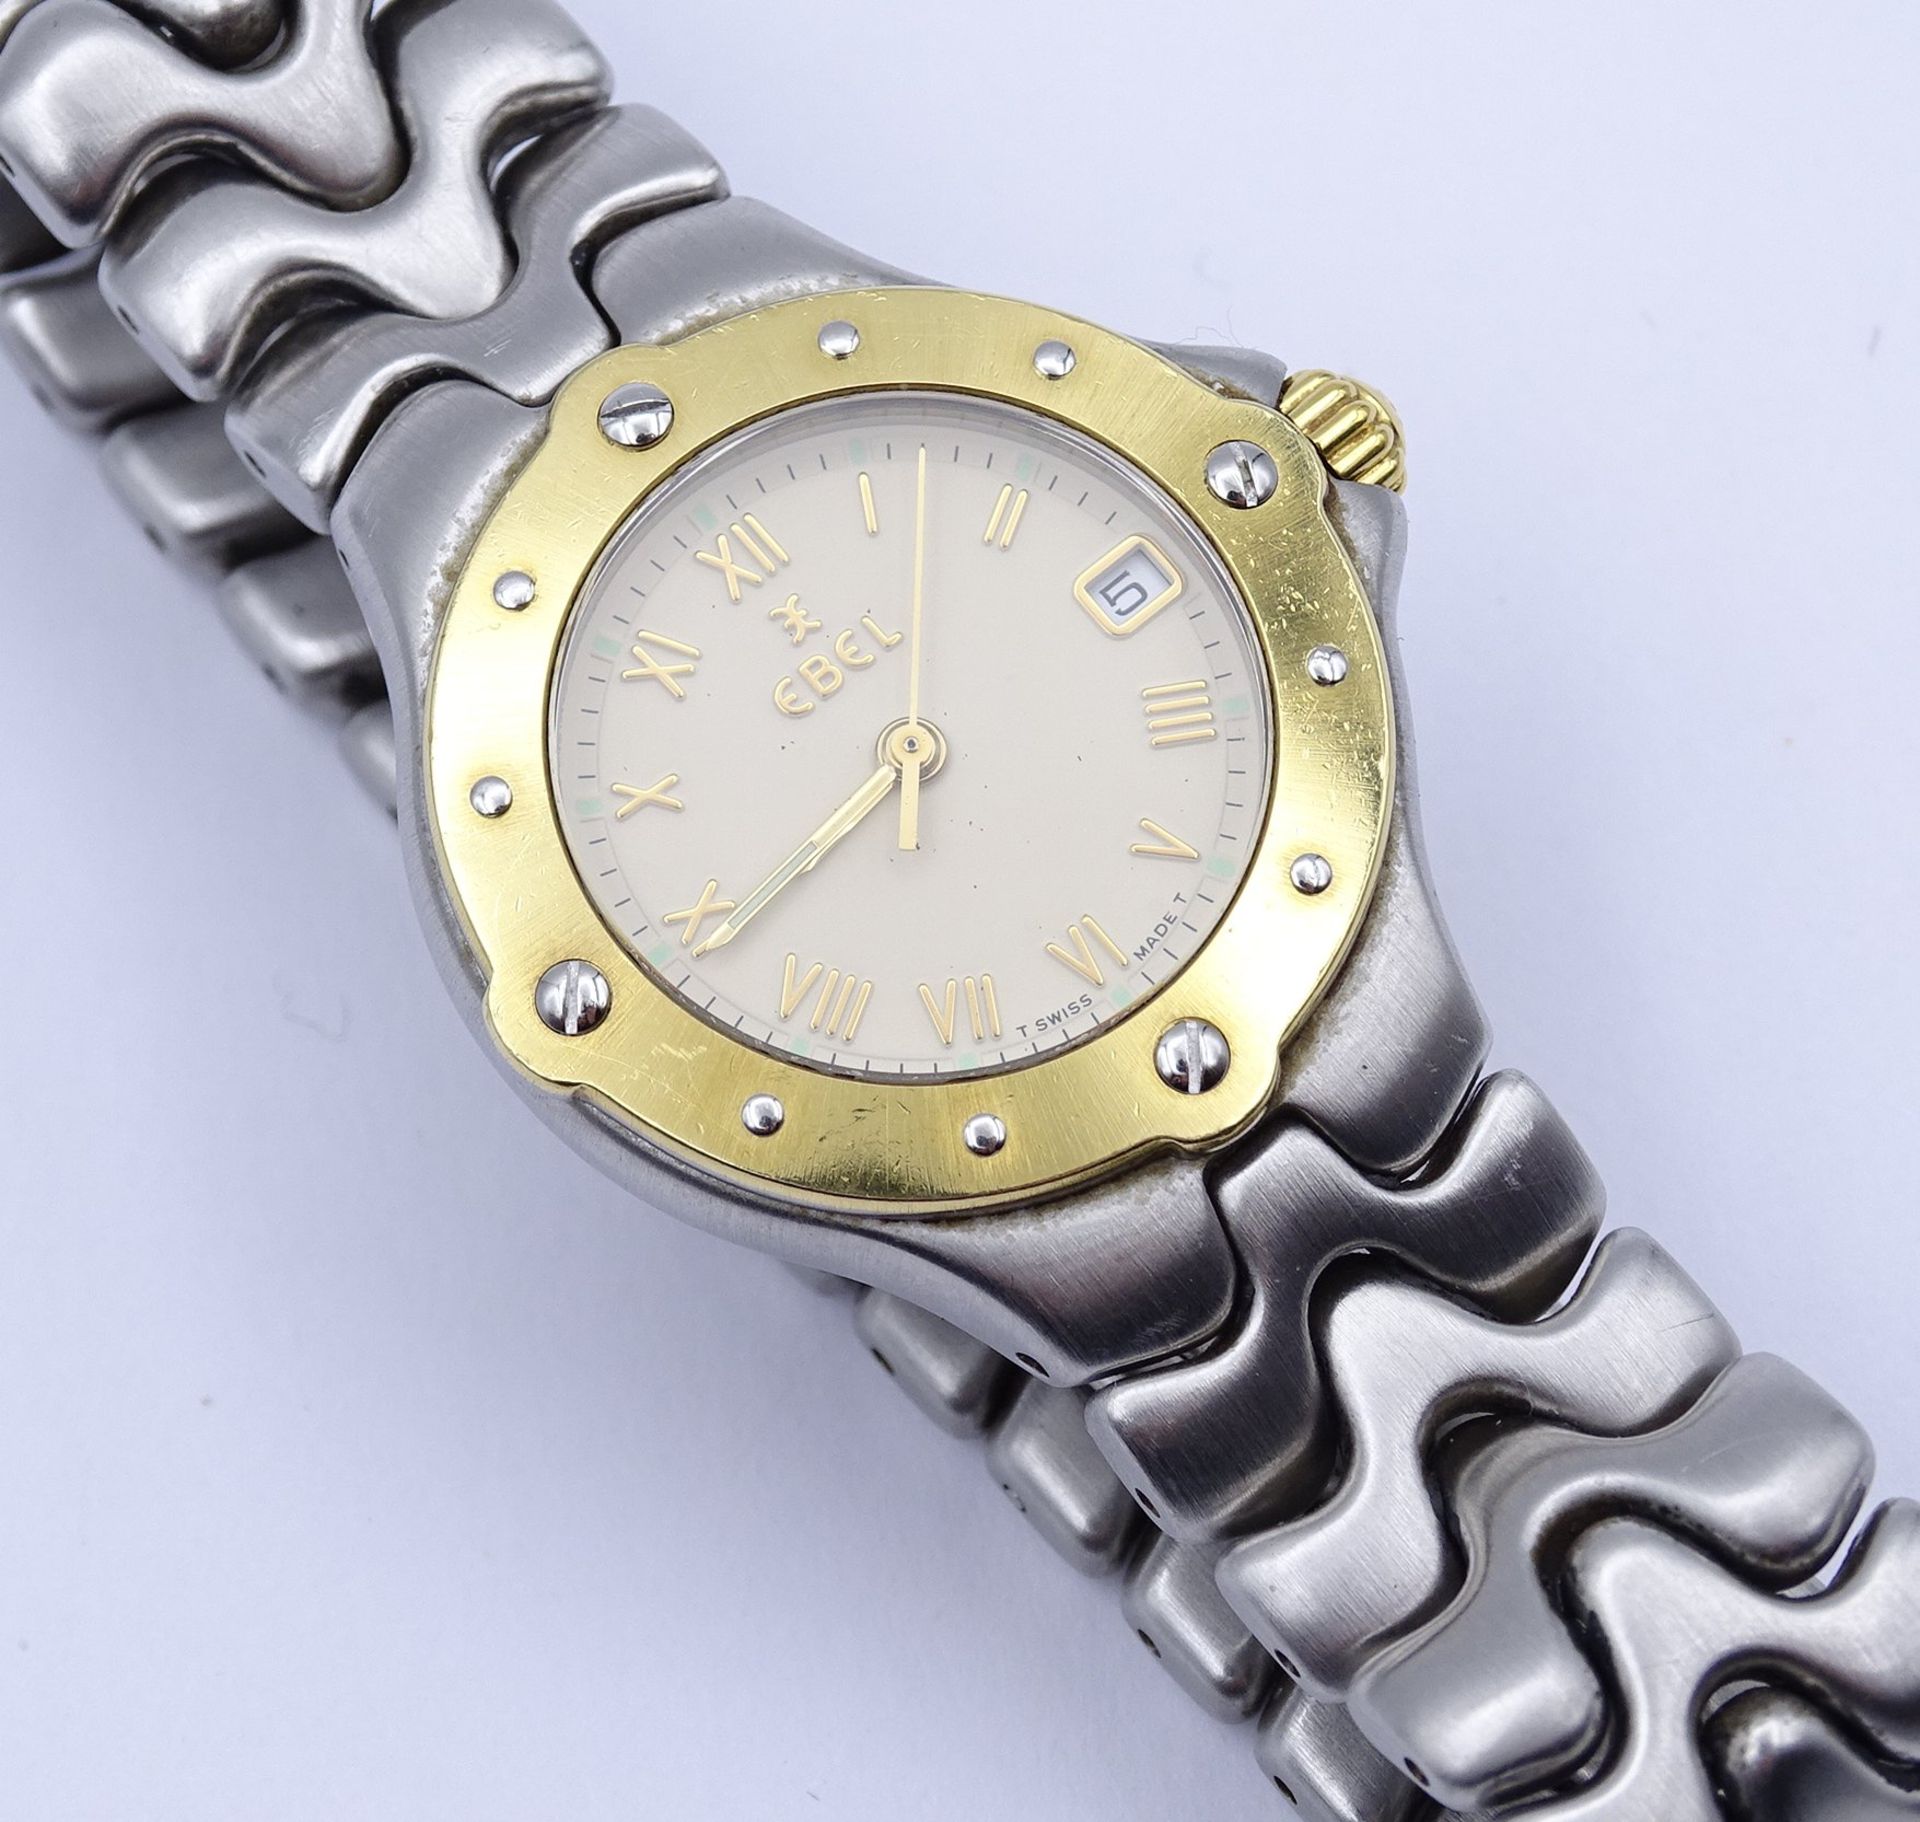 Damen Armbanduhr EBEL SPORTWAVE , Stahl / Gelbgold, Quartz, D. 26mm, Funktion nicht überprüft - Image 5 of 5